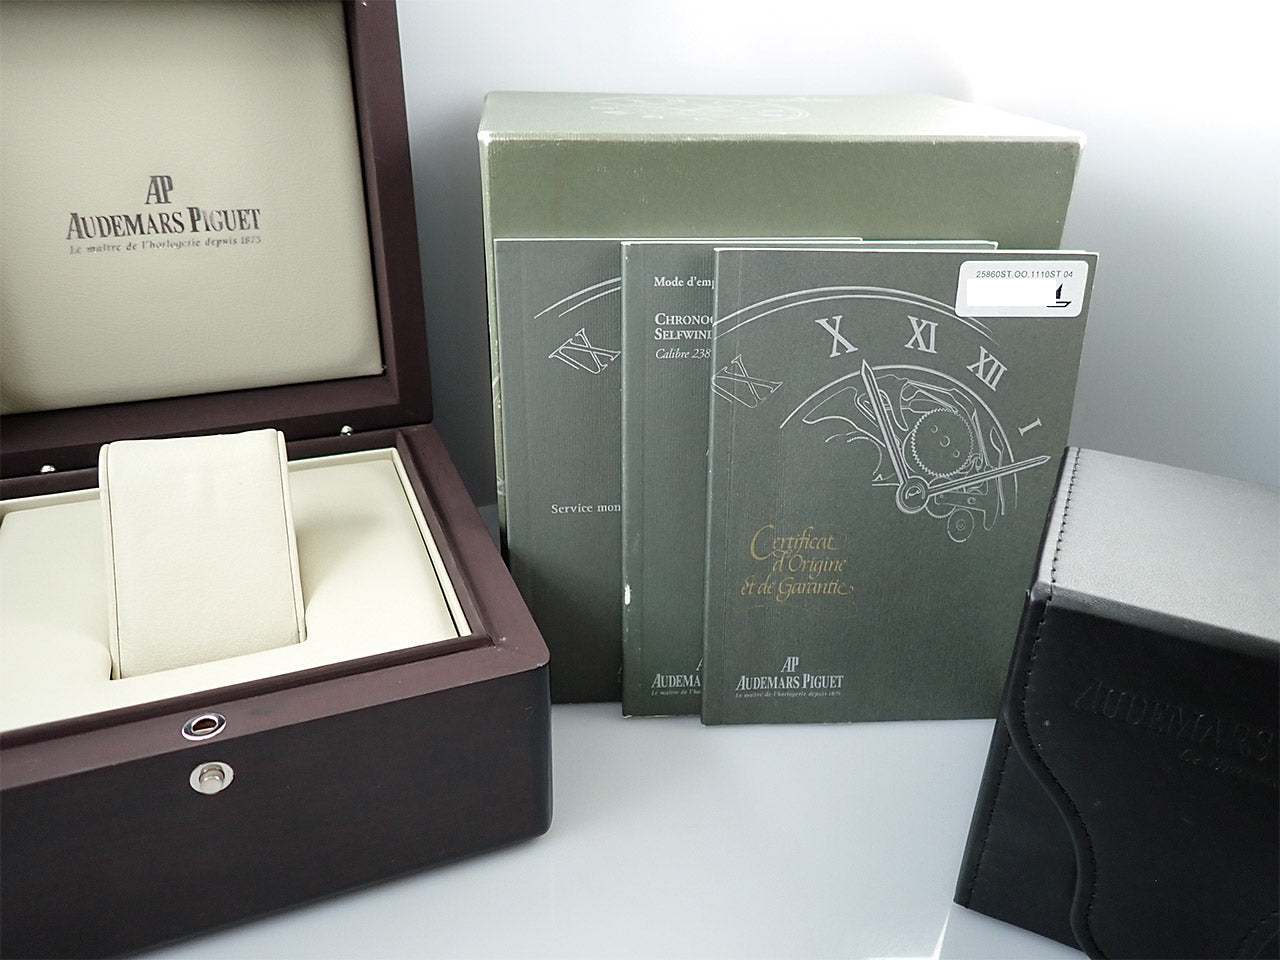 Audemars Piguet Royal Oak Chronograph &lt;Warranty, Box, etc.&gt;